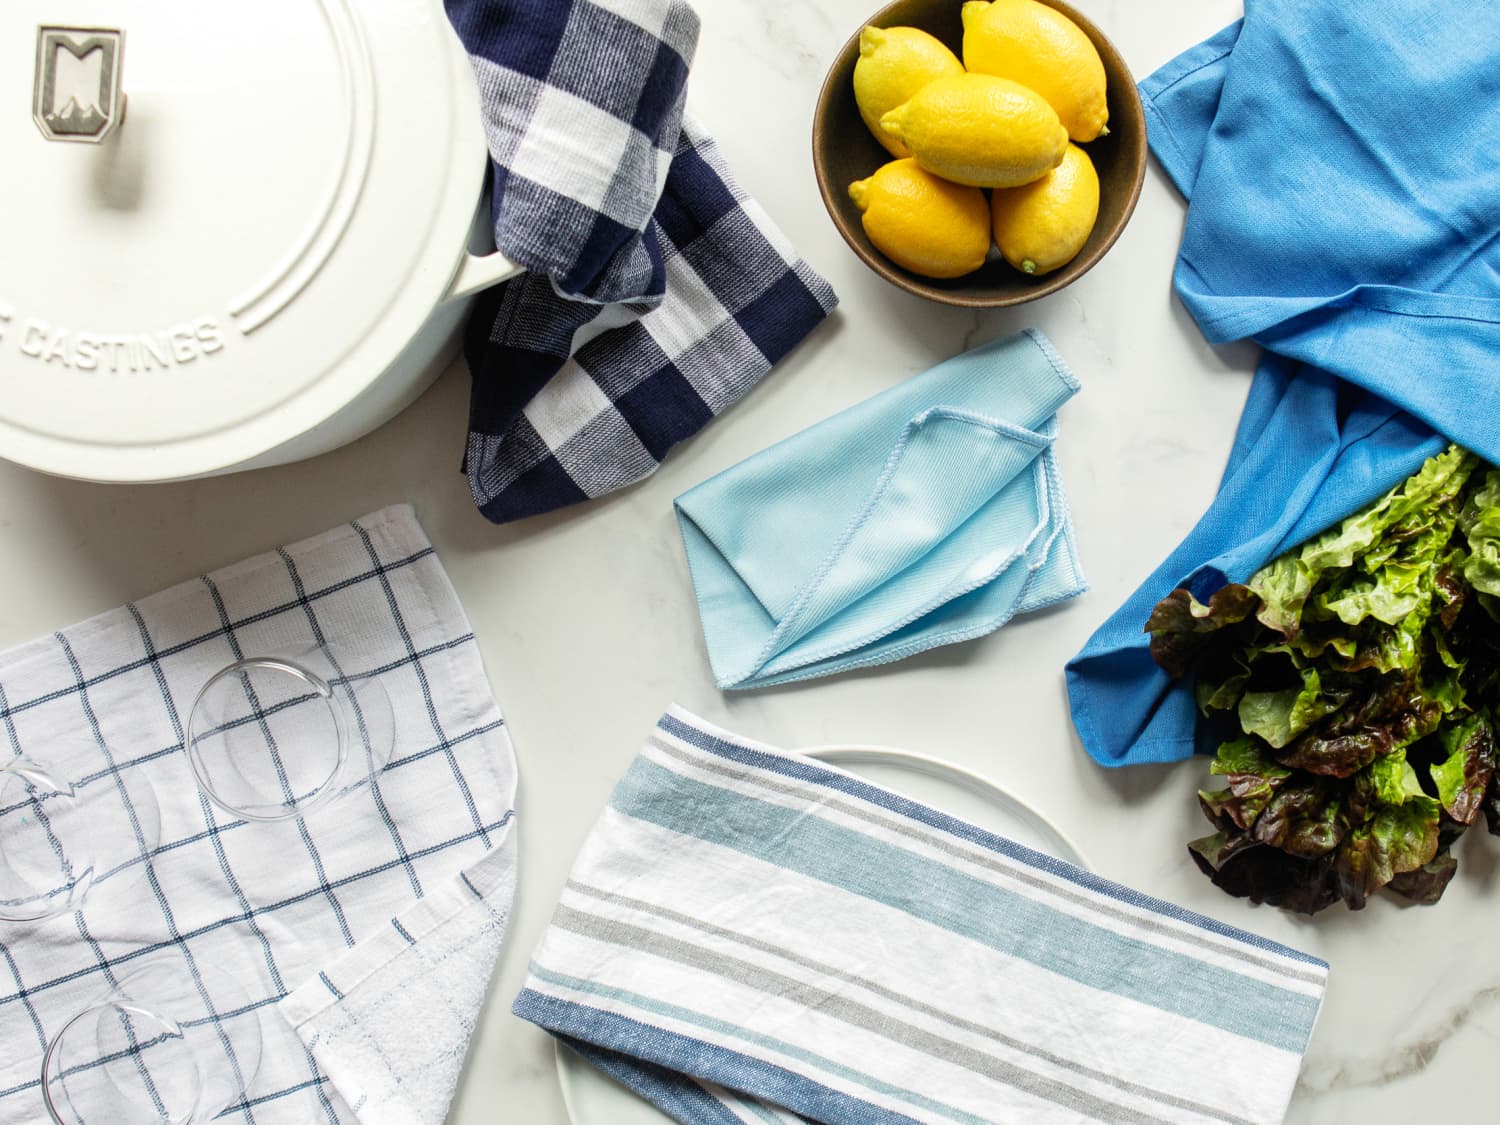 About kitchen towels  Professional Secrets